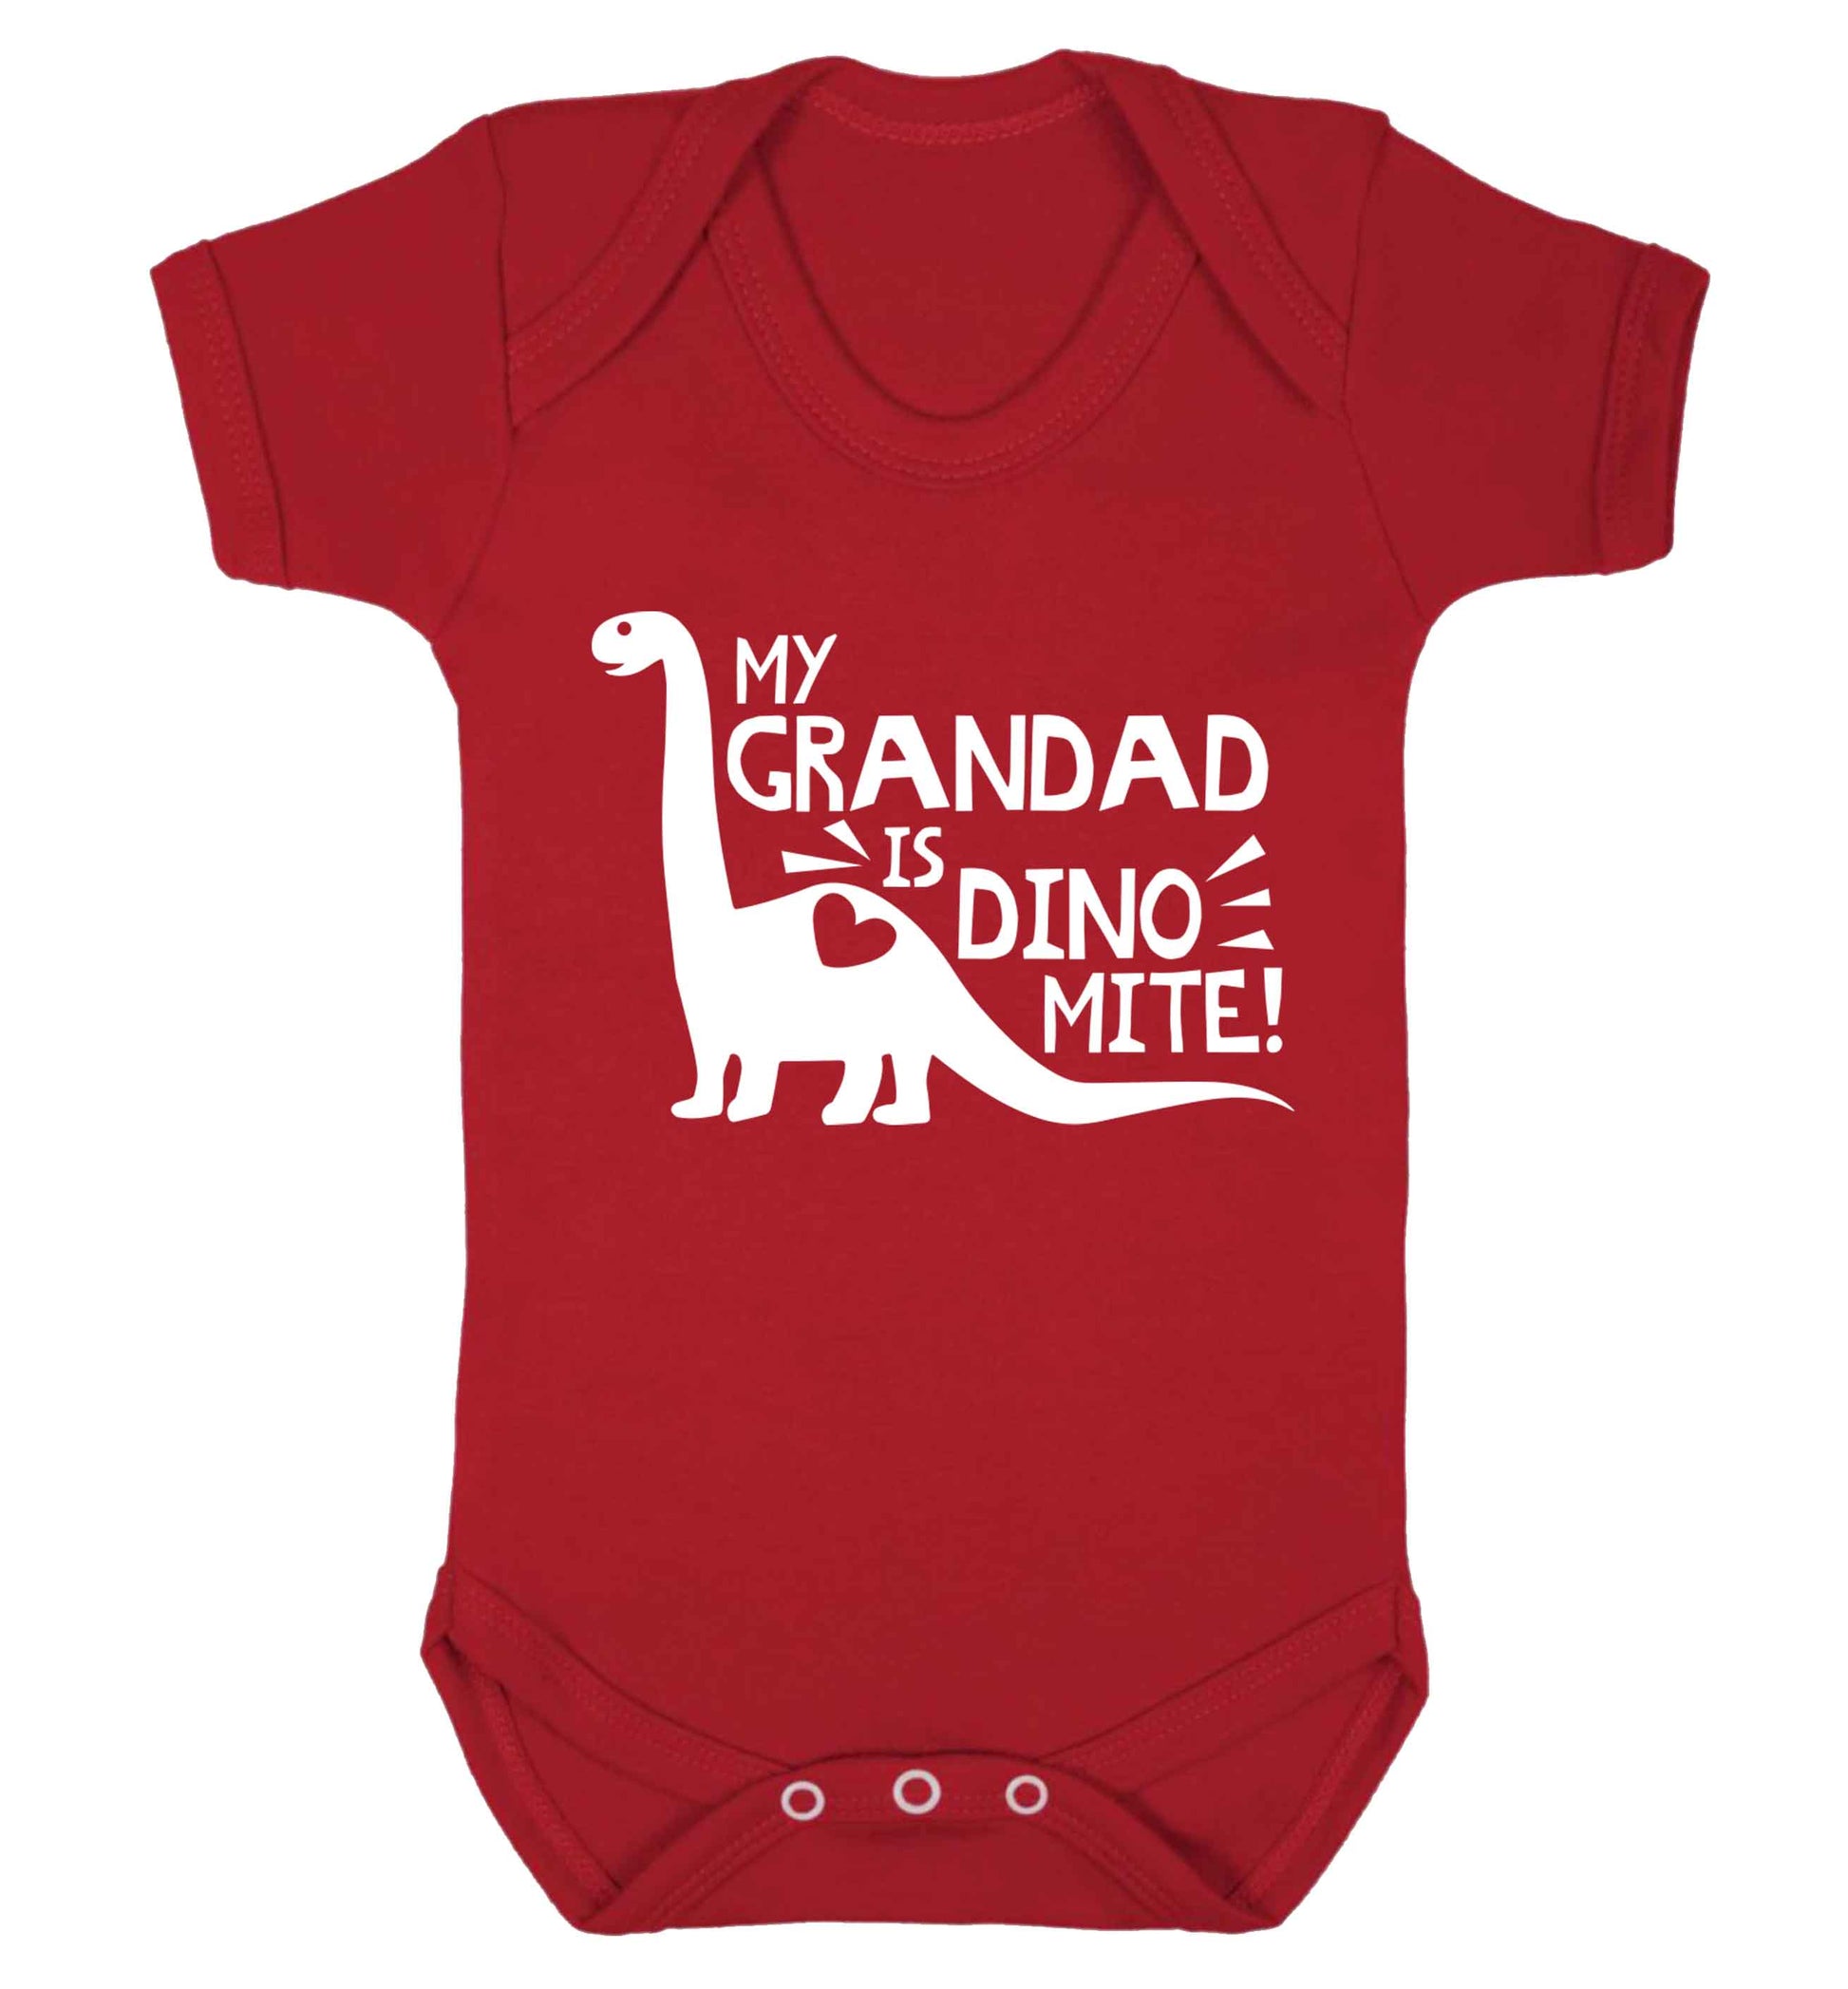 My grandad is dinomite! Baby Vest red 18-24 months